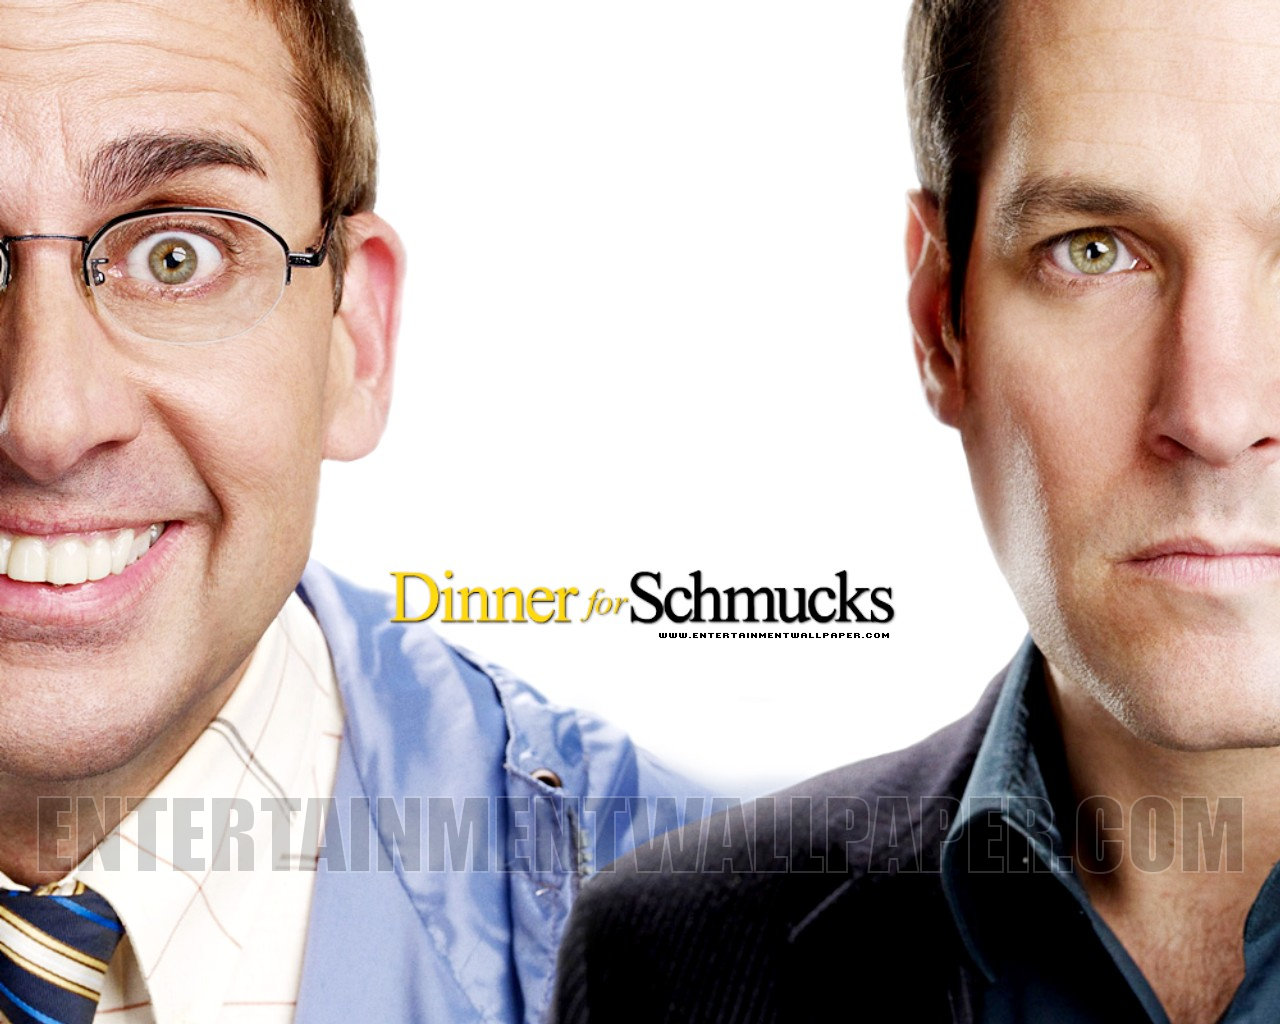 Dinner for Schmucks Wallpaper: Dinner For Schmucks! 